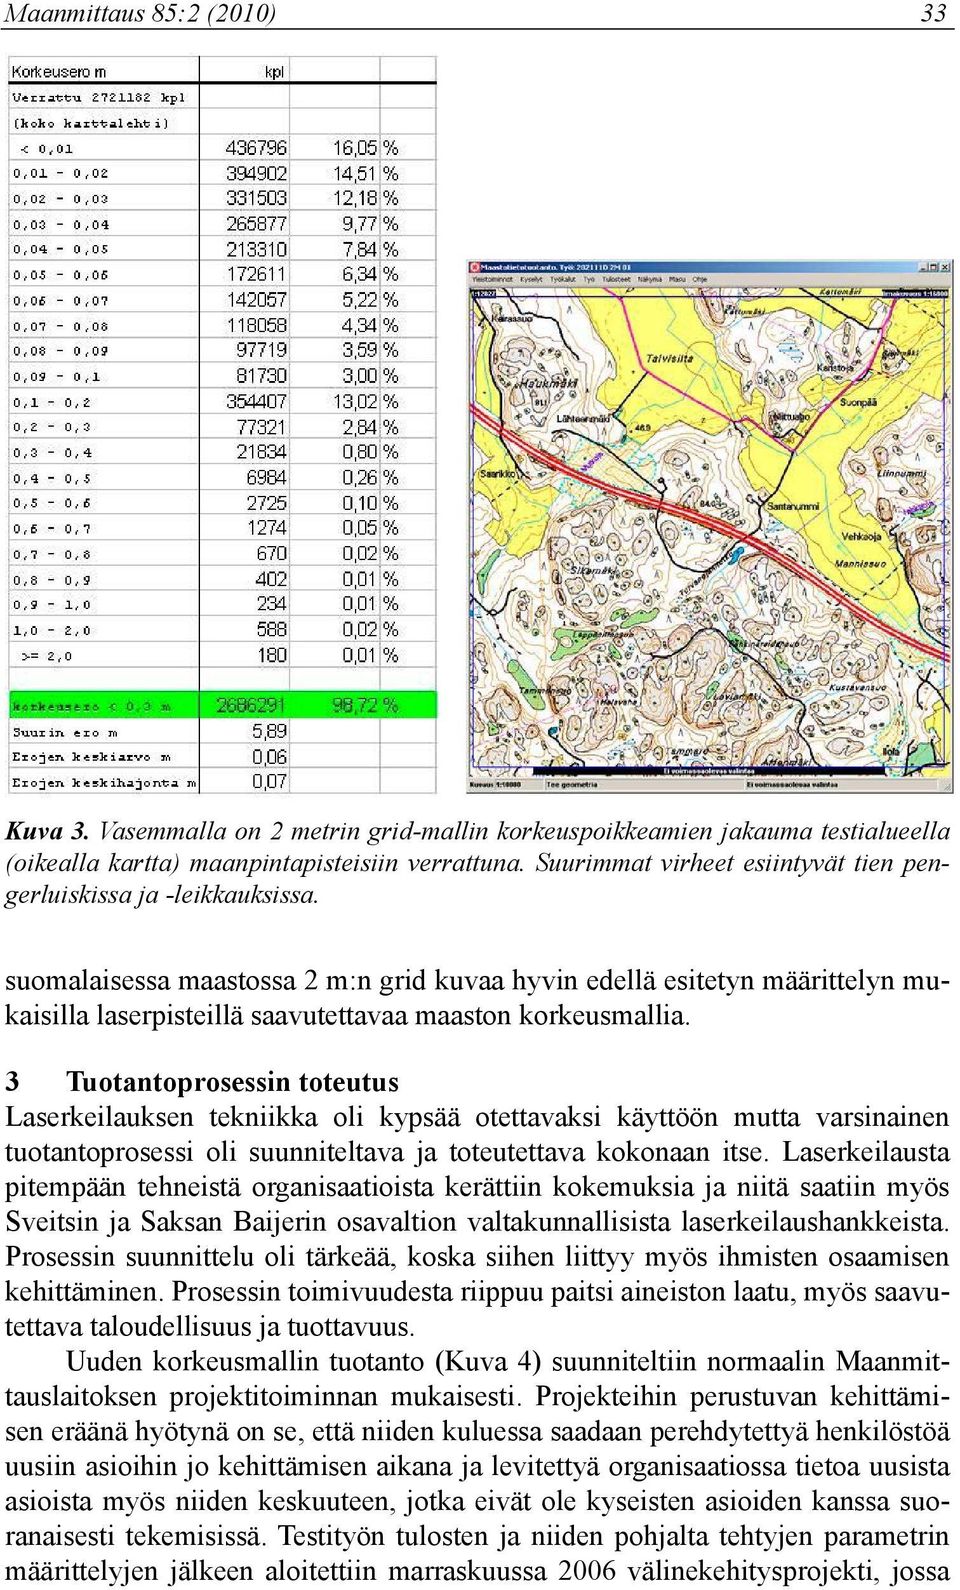 suomalaisessa maastossa 2 m:n grid kuvaa hyvin edellä esitetyn määrittelyn mukaisilla laserpisteillä saavutettavaa maaston korkeusmallia.